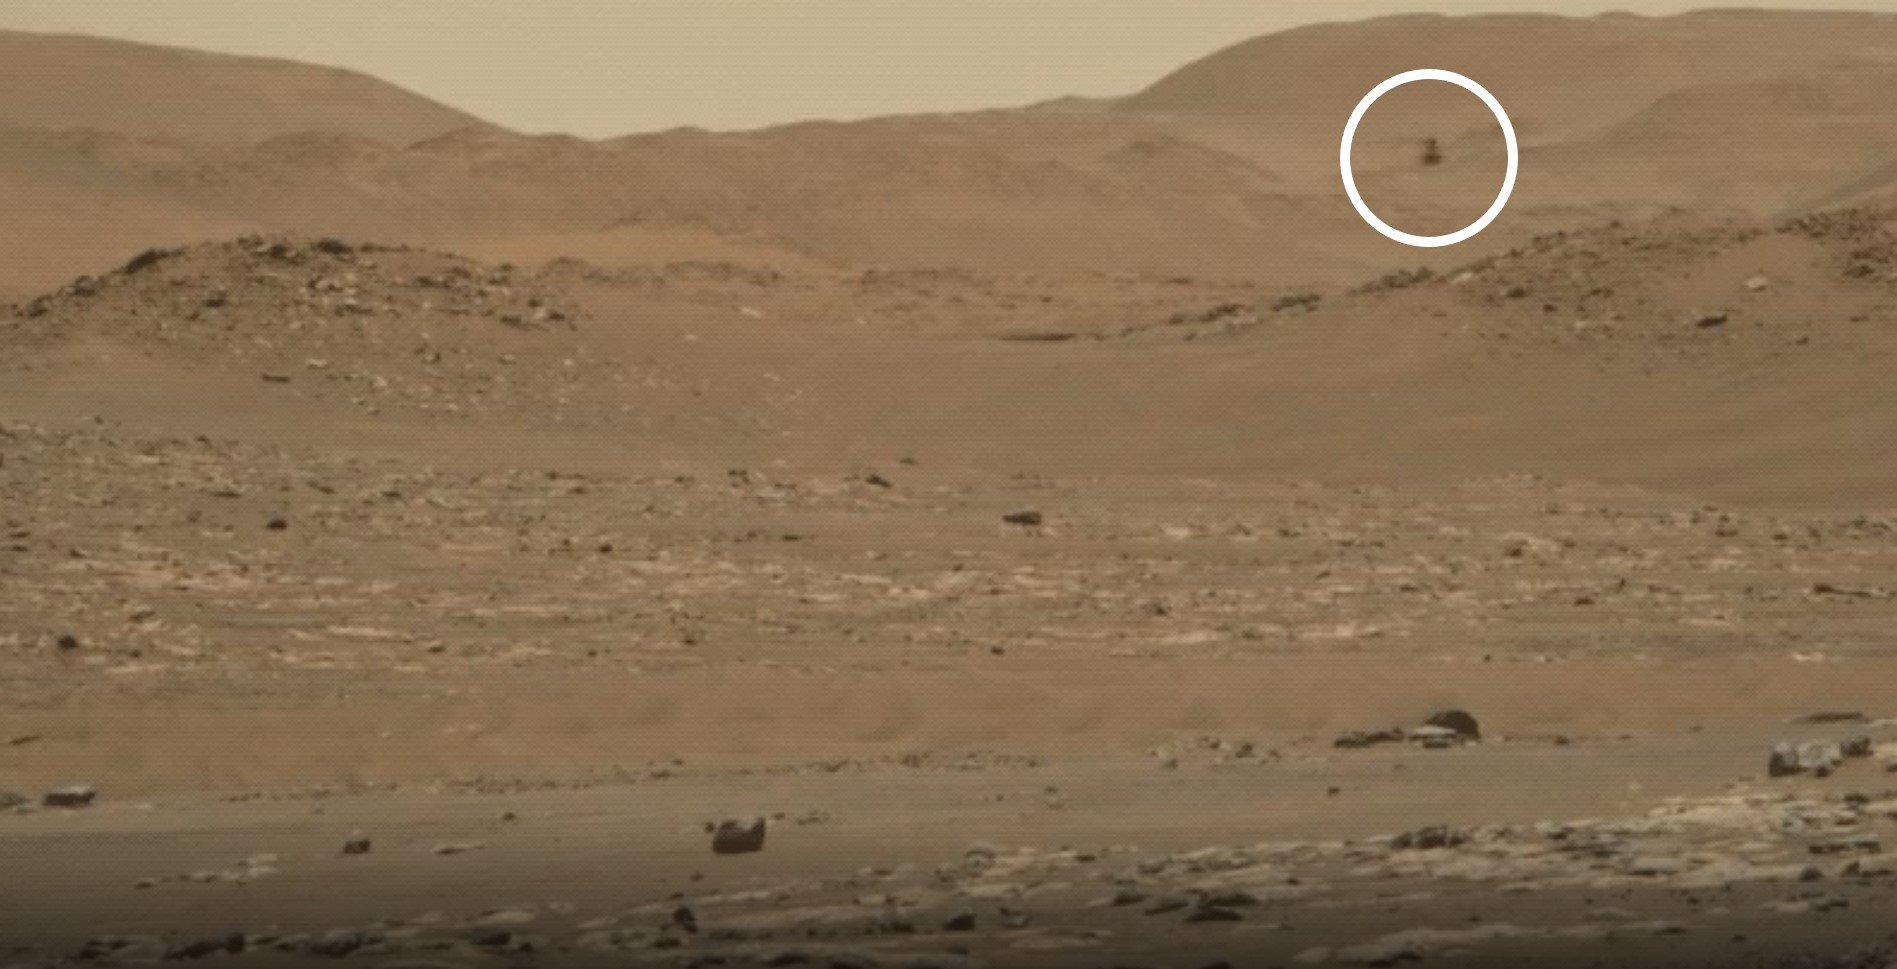 Το Perseverance κατέγραψε εντυπωσιακό βίντεο του ελικοπτέρου Ingenuity που πετά στον Άρη